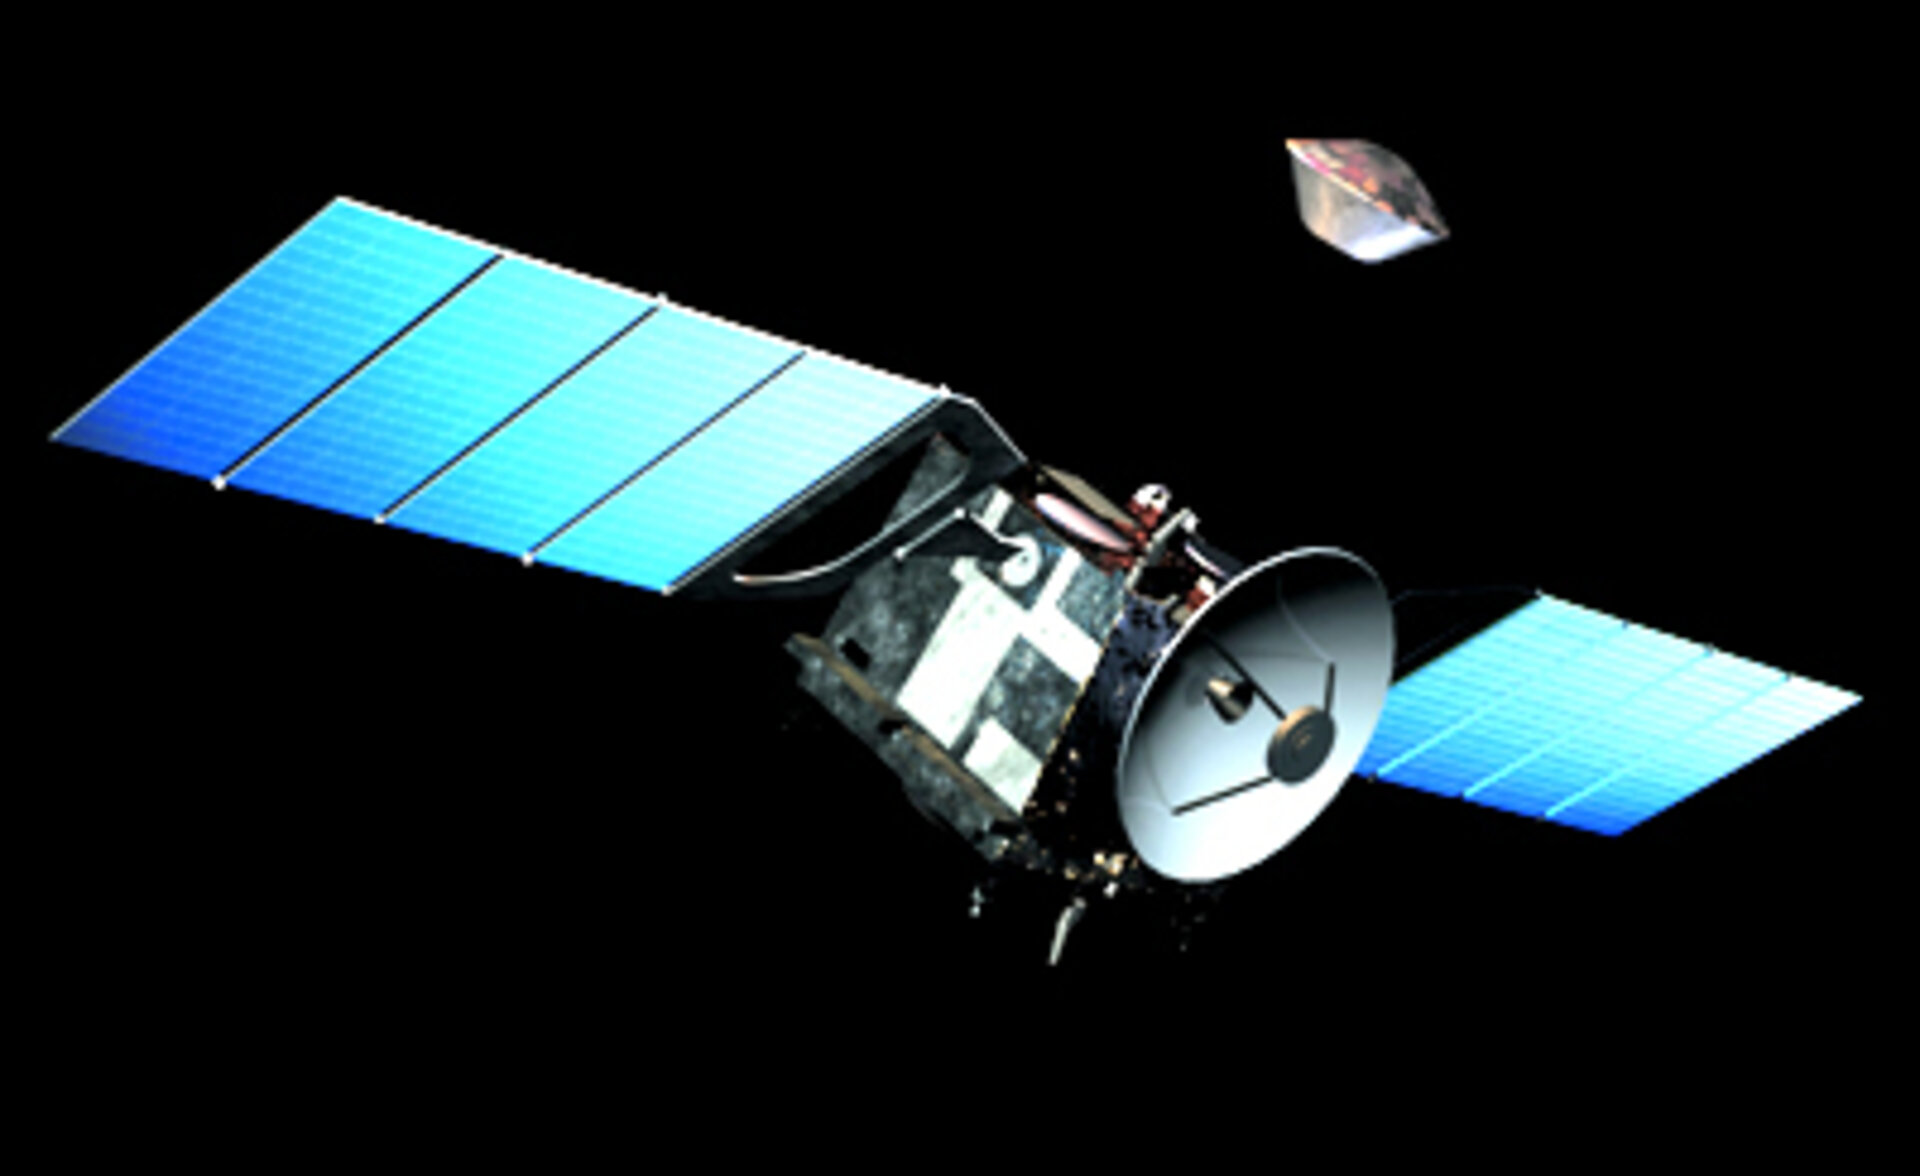 Beagle 2 verläßt das Mars Express Mutterschiff